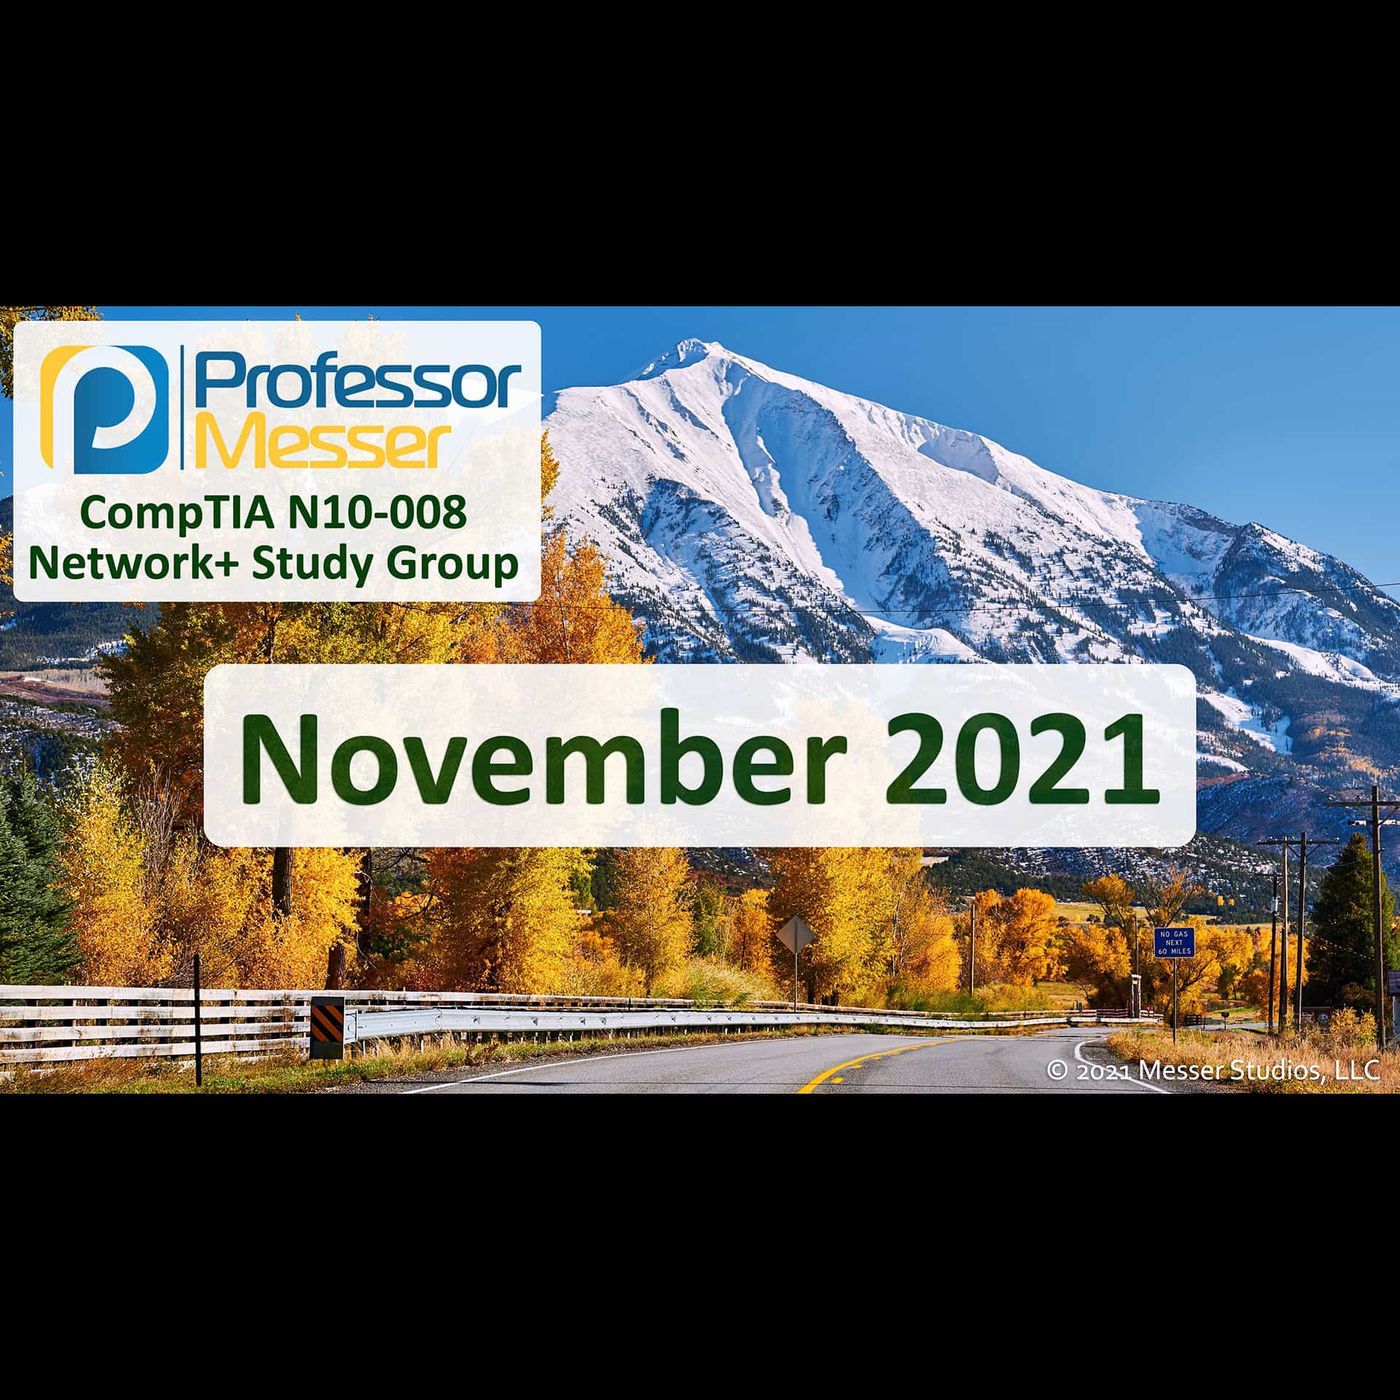 Professor Messer's N10-008 Network+ Study Group - November 2021